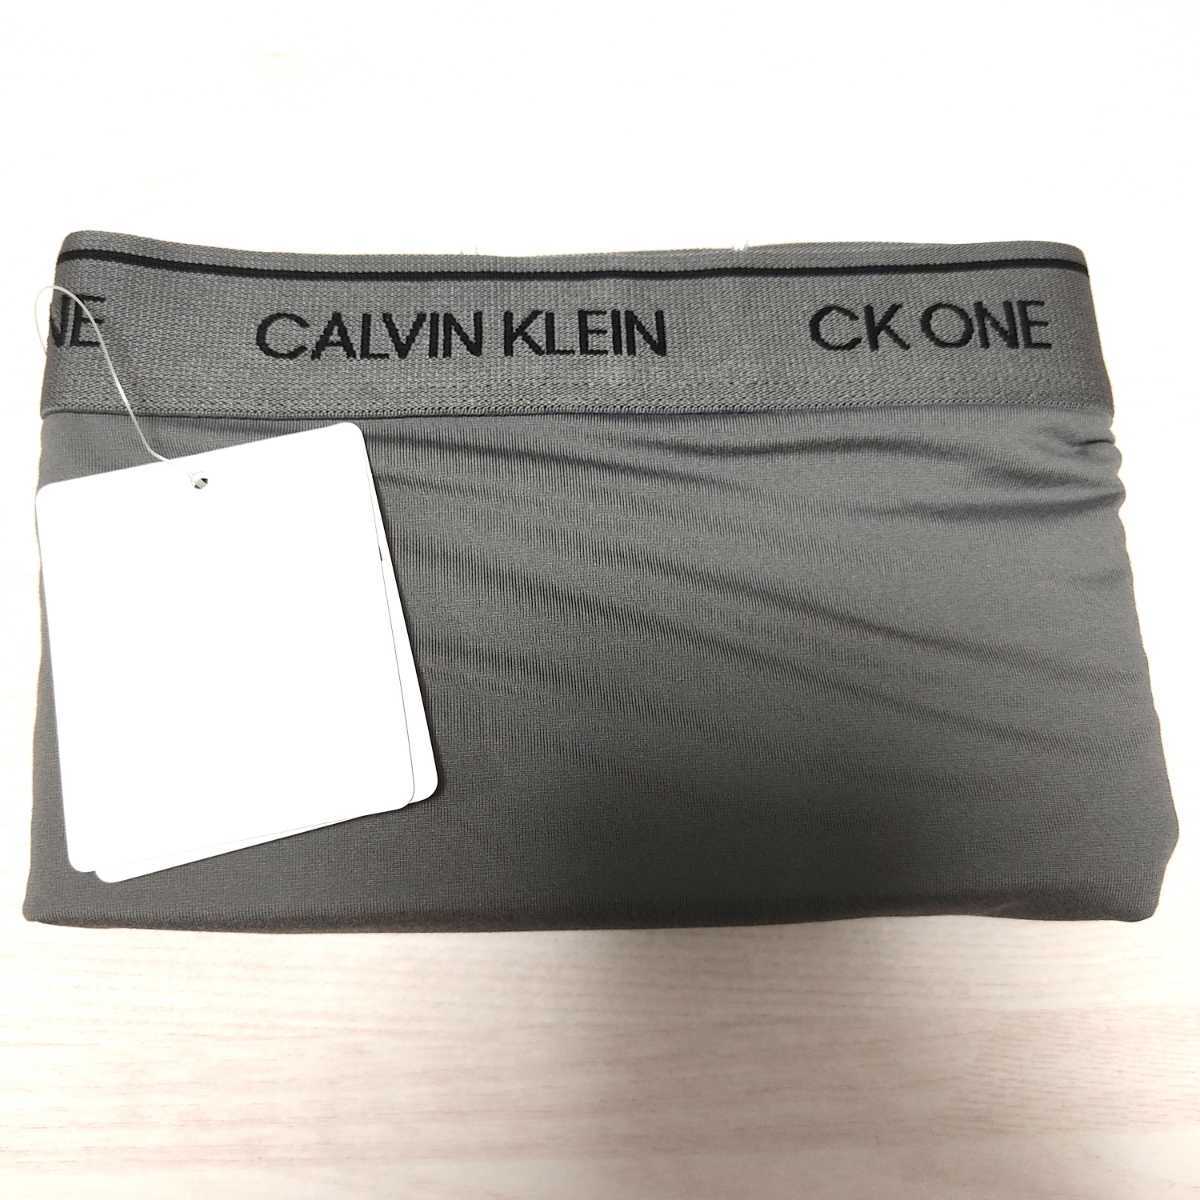 CALVIN KLEINカルバンクライン CK one Micro マイクロ ボクサーパンツ 前閉じ メンズ NB2226 グレー 海外S(日本M)